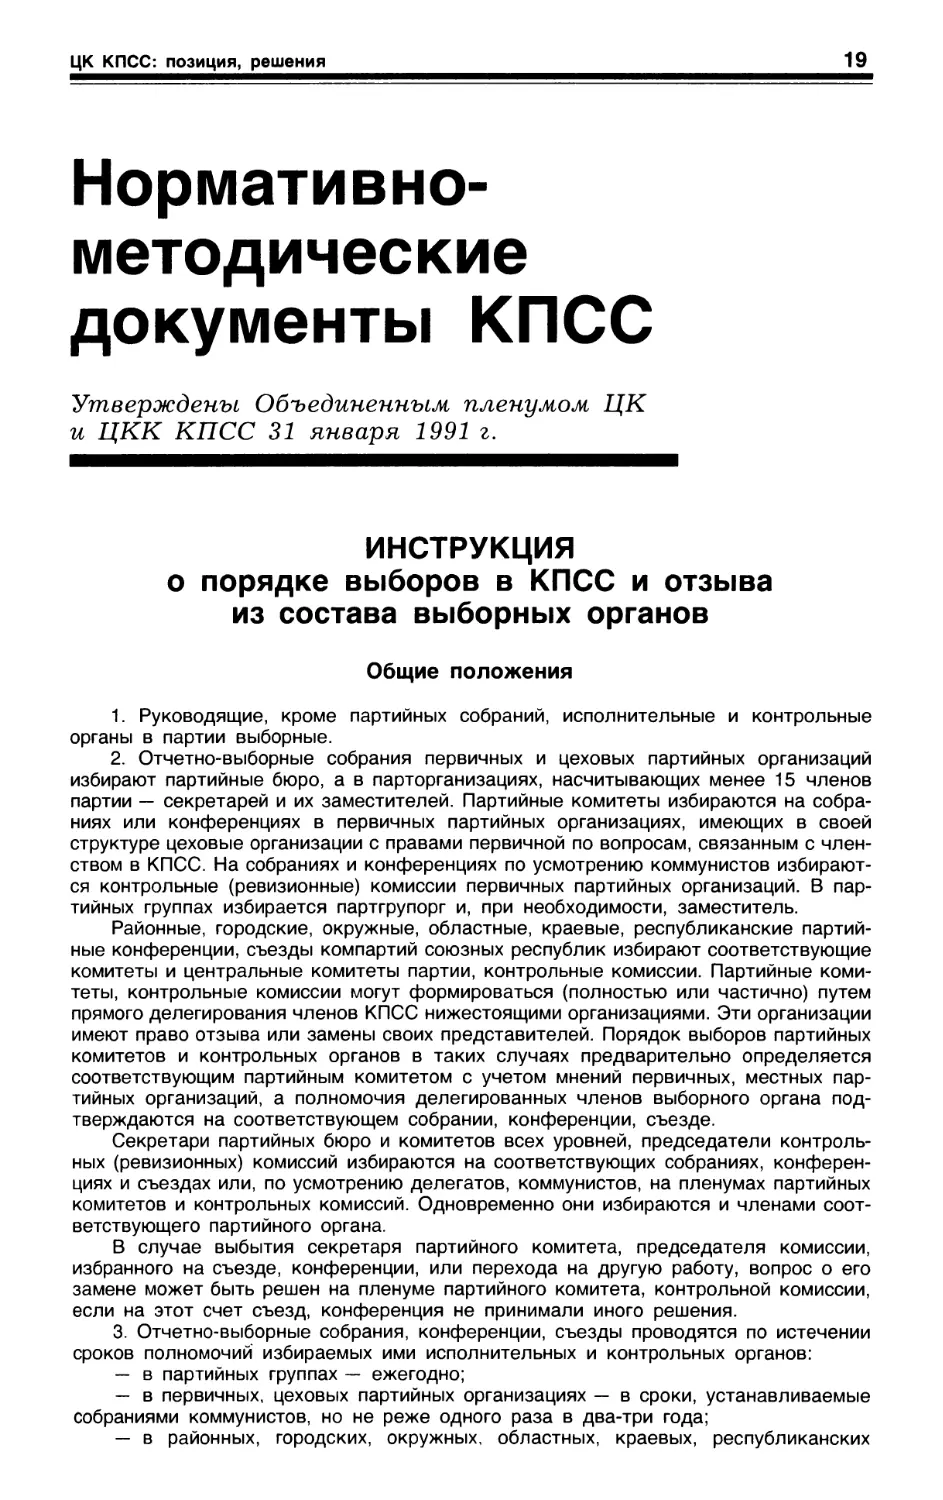 Инструкция о порядке выборов в КПСС и отзыва из состава выборных органов